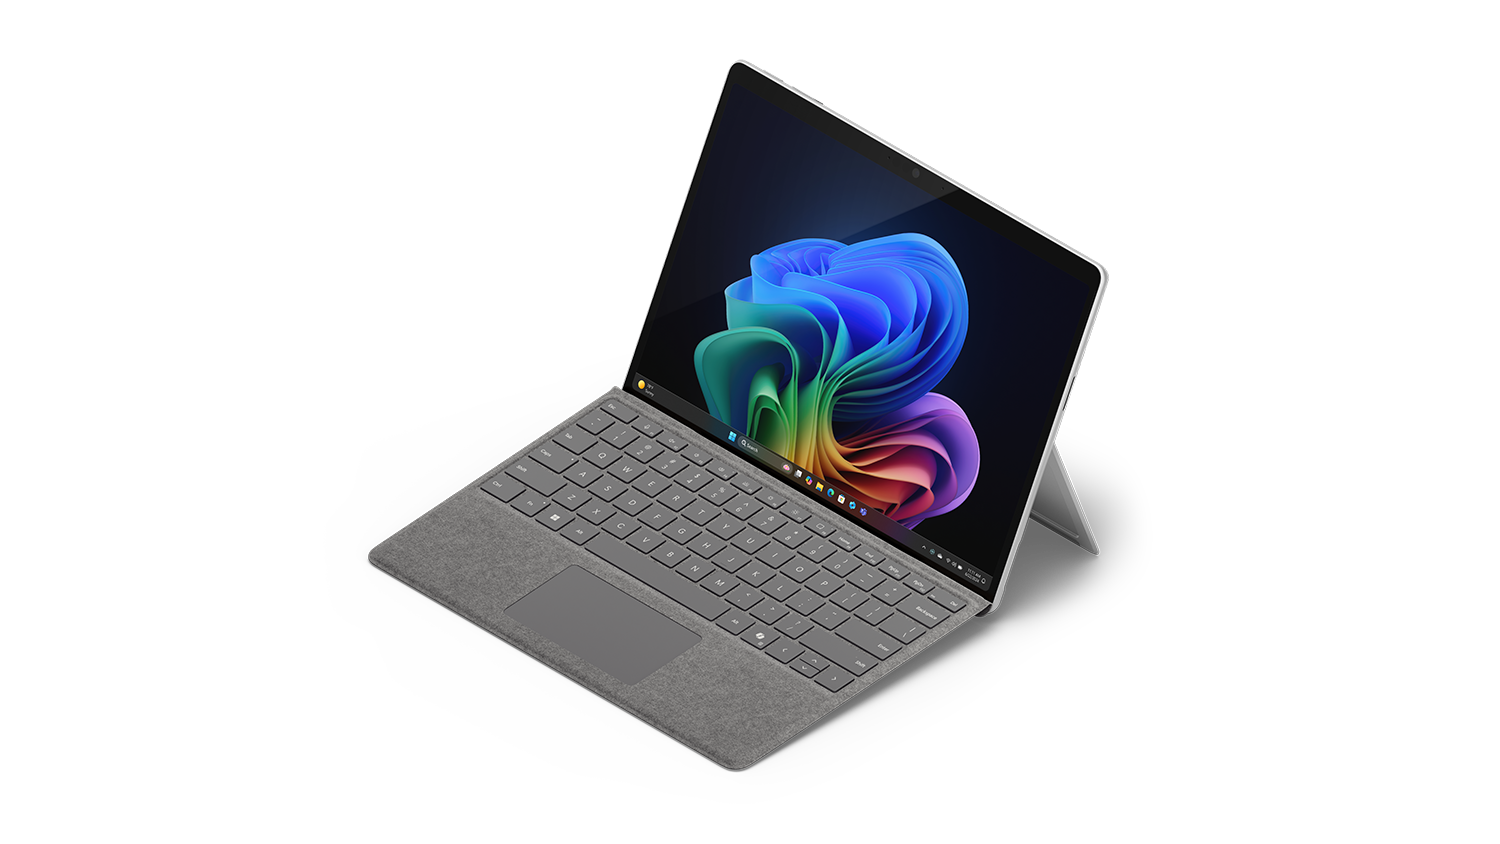 Hoekweergave van Surface Pro in platina met bevestigd toetsenbord.